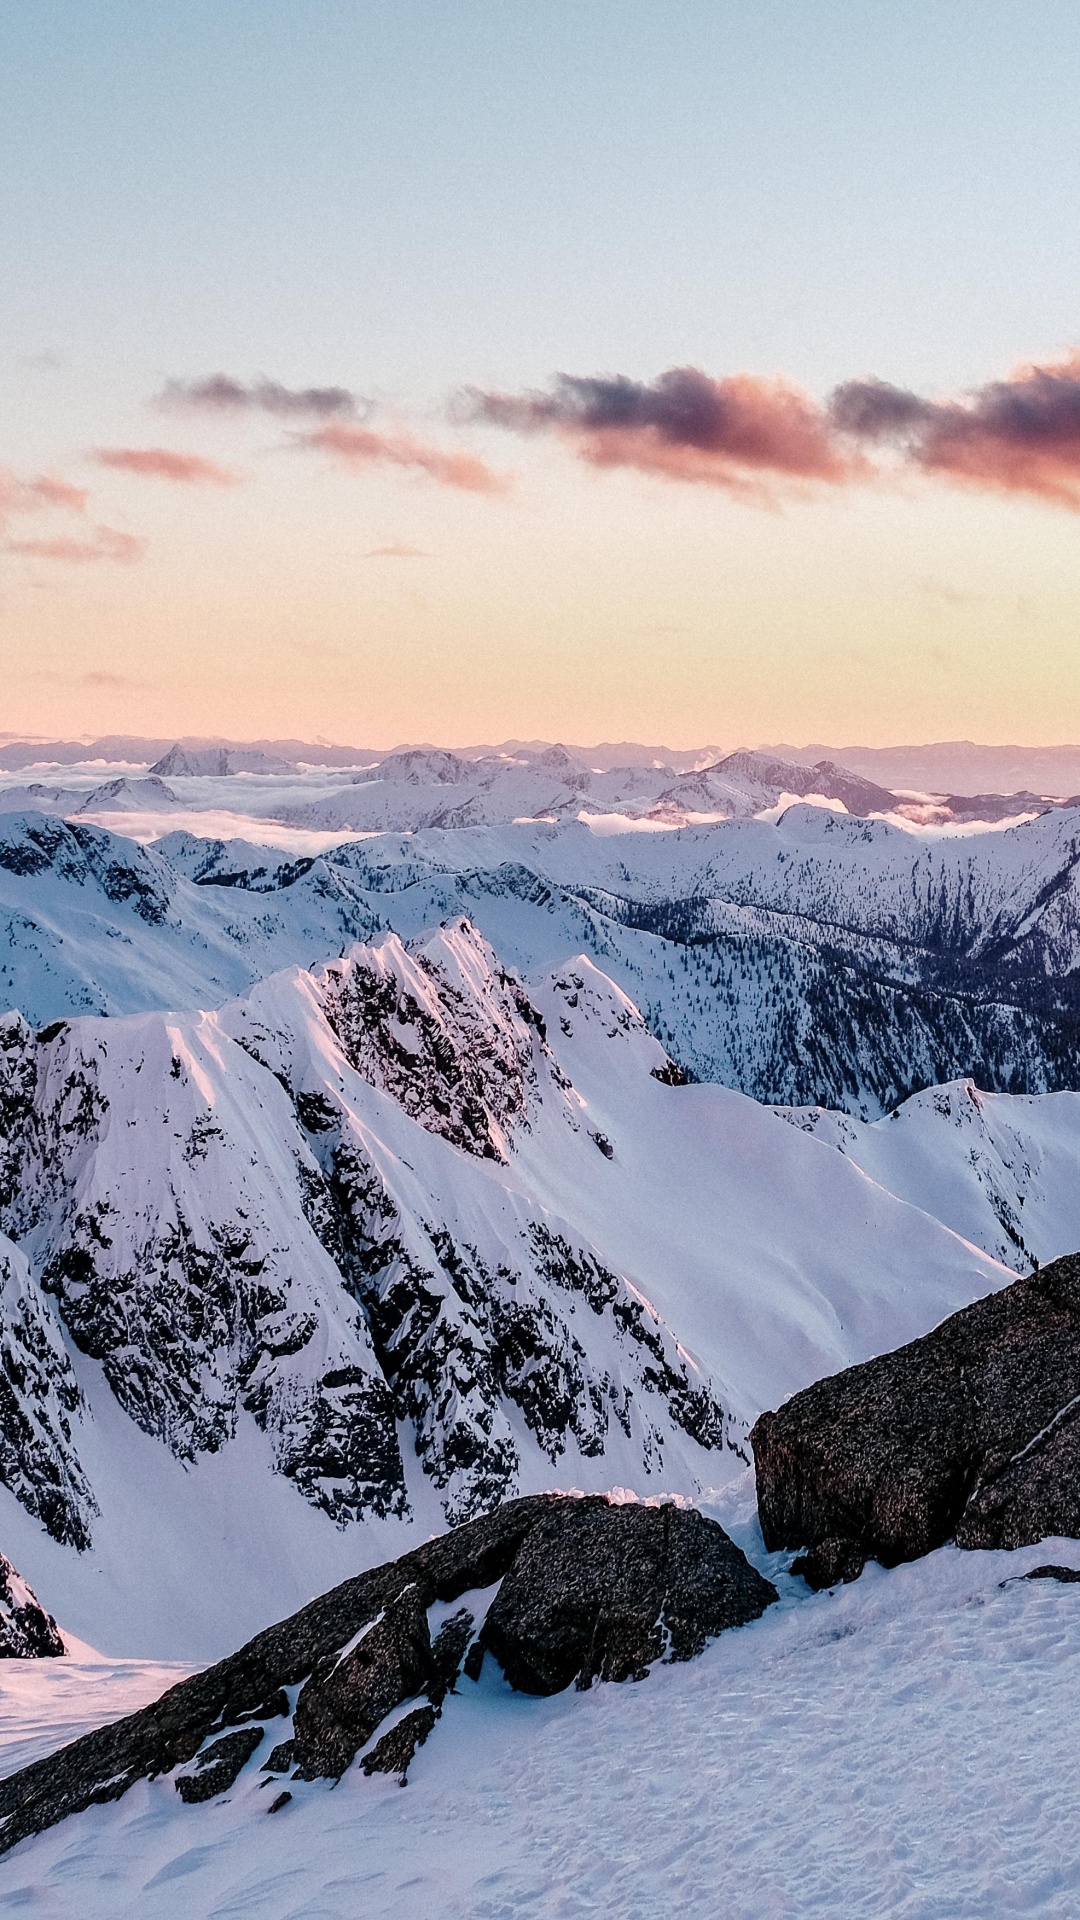 Las Formaciones Montañosas, Montaña, Nieve, Invierno, Naturaleza. Wallpaper in 1080x1920 Resolution